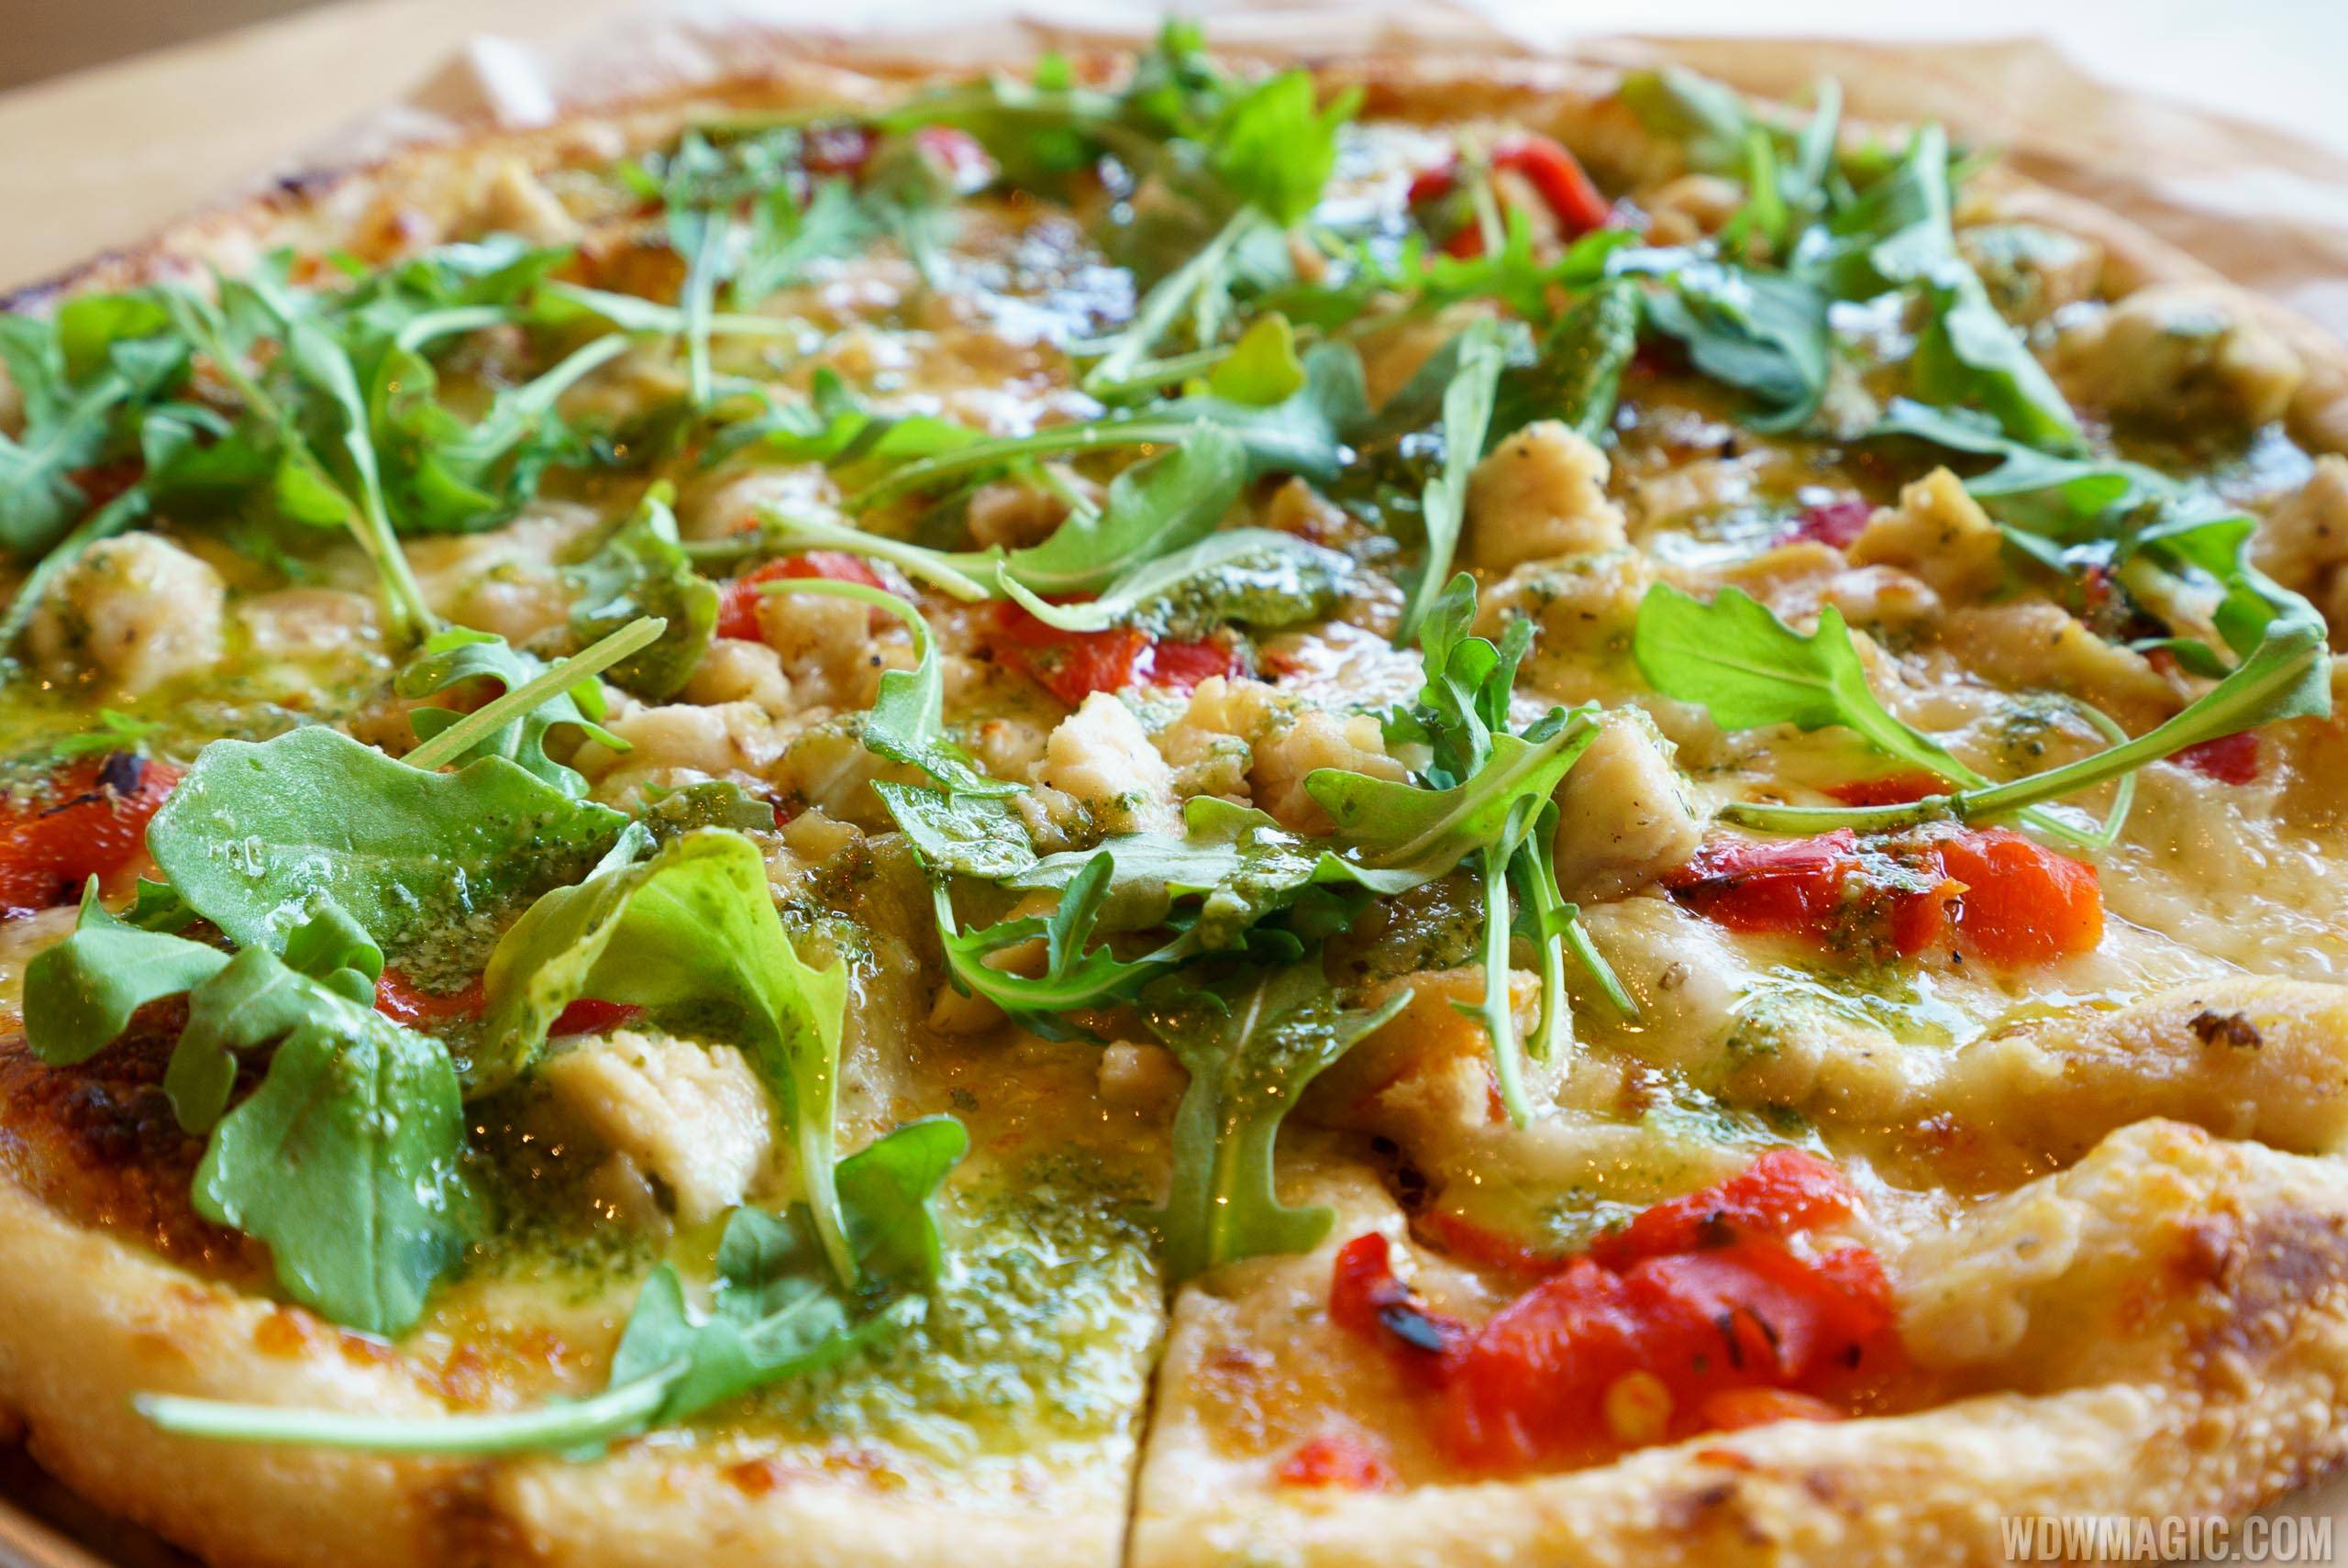 Blaze Pizza - Green Stripe signature pizza - Pesto Drizzle over Chicken, Red Peppers, Garlic, Mozzarella and Arugula